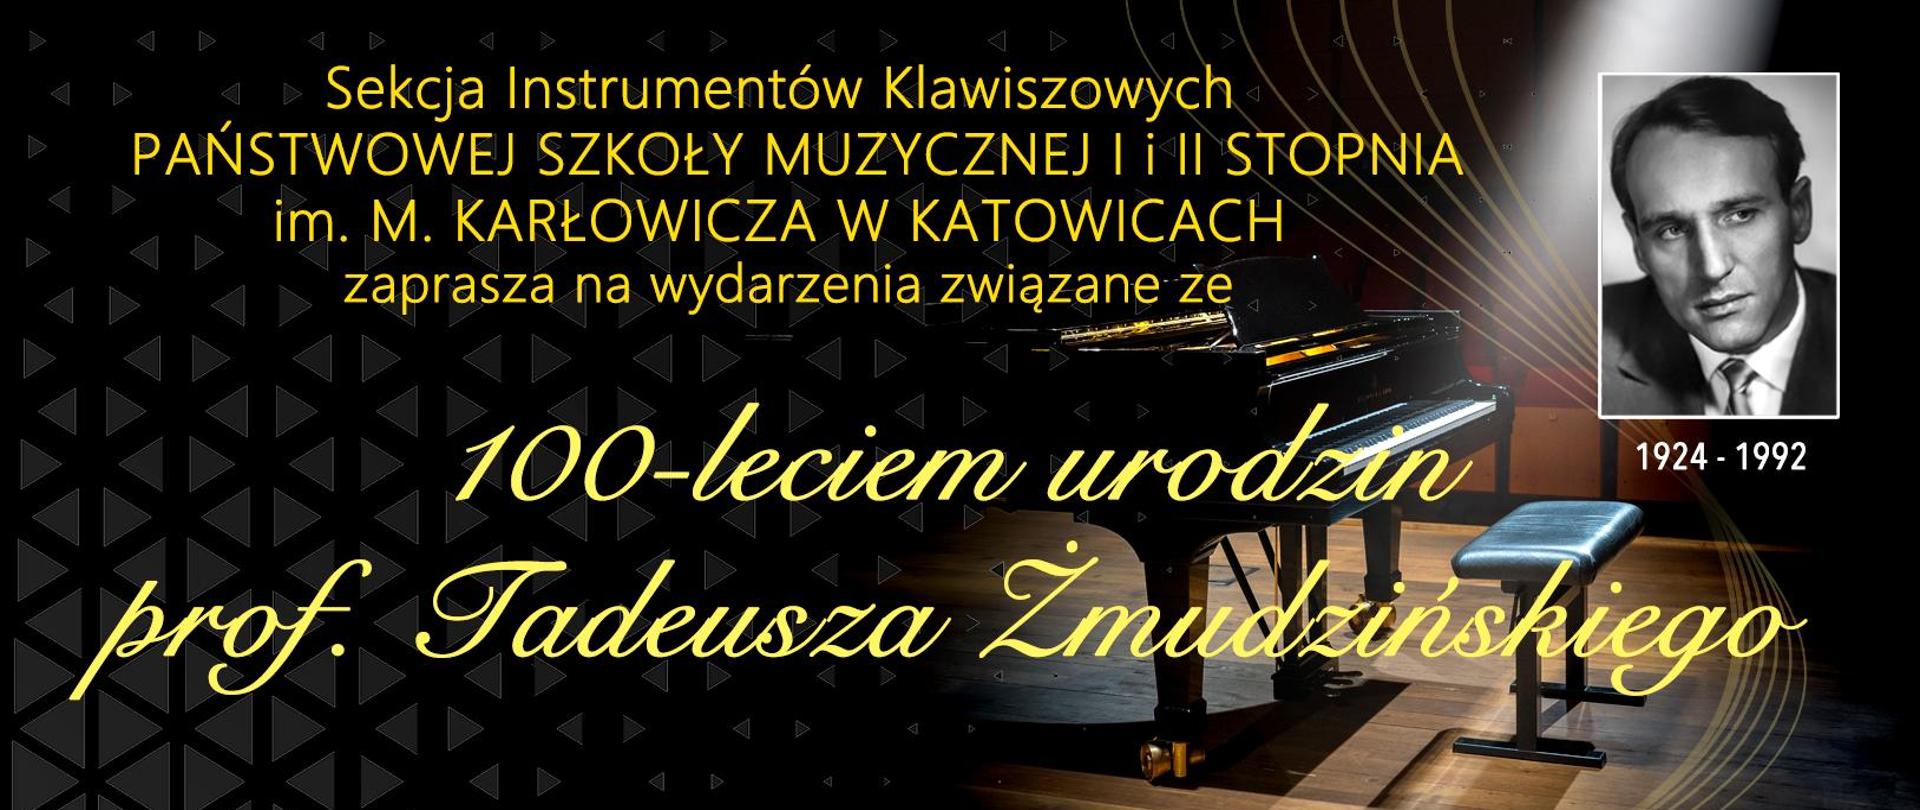 Sekcja Instrumentów Klawiszowych PAŃSTWOWEJ SZKOŁY MUZYCZNEJ I i II STOPNIA im. M. KARŁOWICZA W KATOWICACH zaprasza na wydarzenia związane ze 100-leciem urodzin prof. Tadeusza Żmudzińskiego
1924-1992